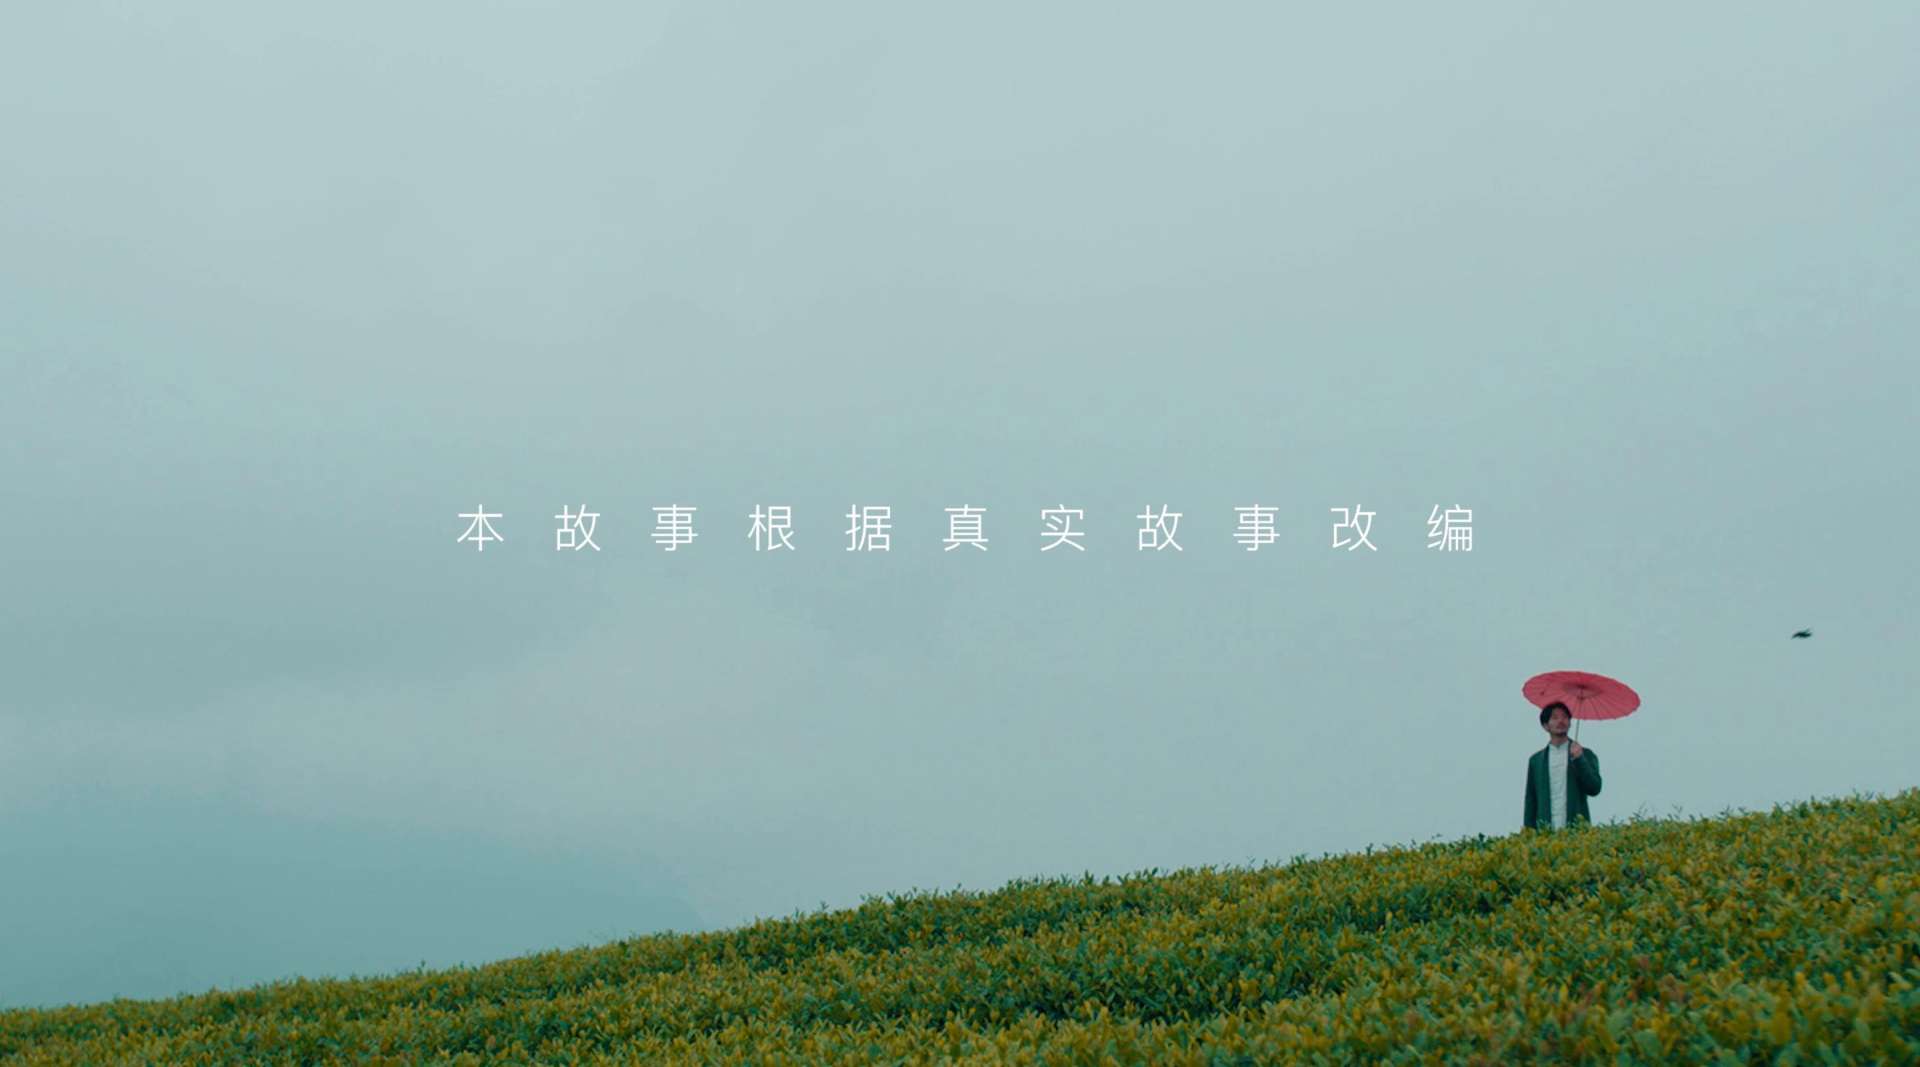 马边茶品牌微电影丨《一叶知晴雨》